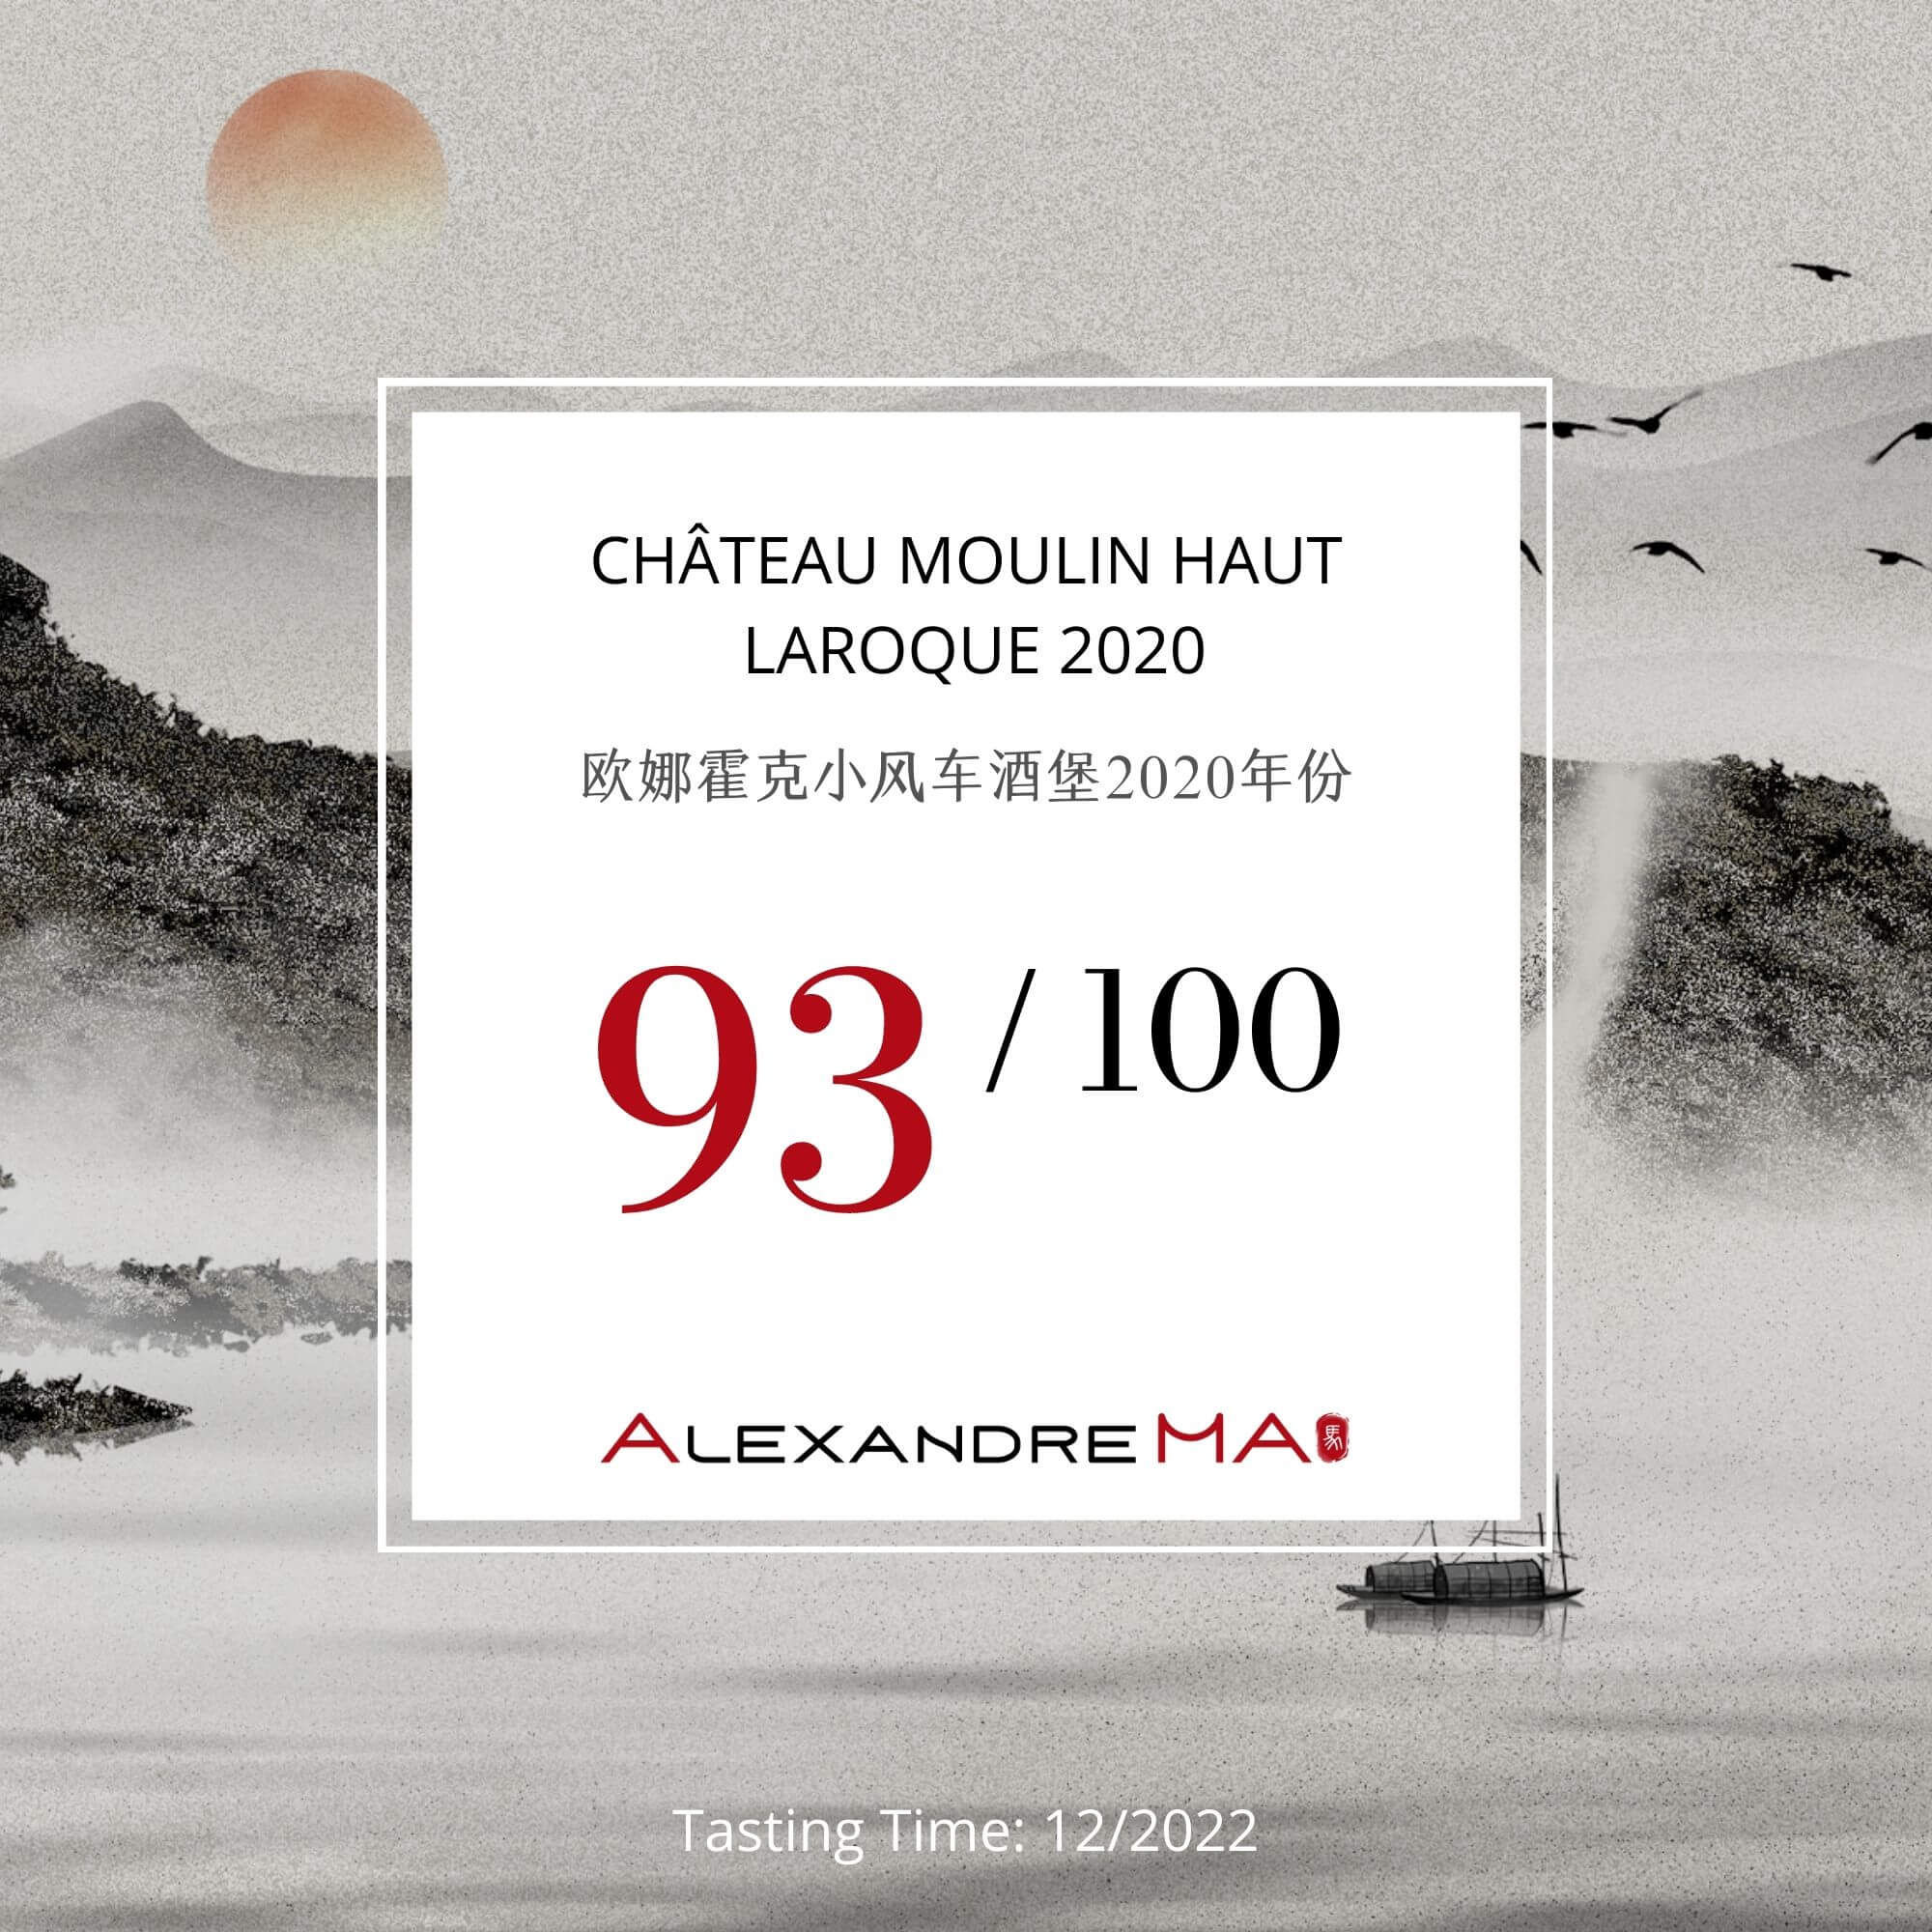 Château Moulin Haut Laroque 2020 - Alexandre MA